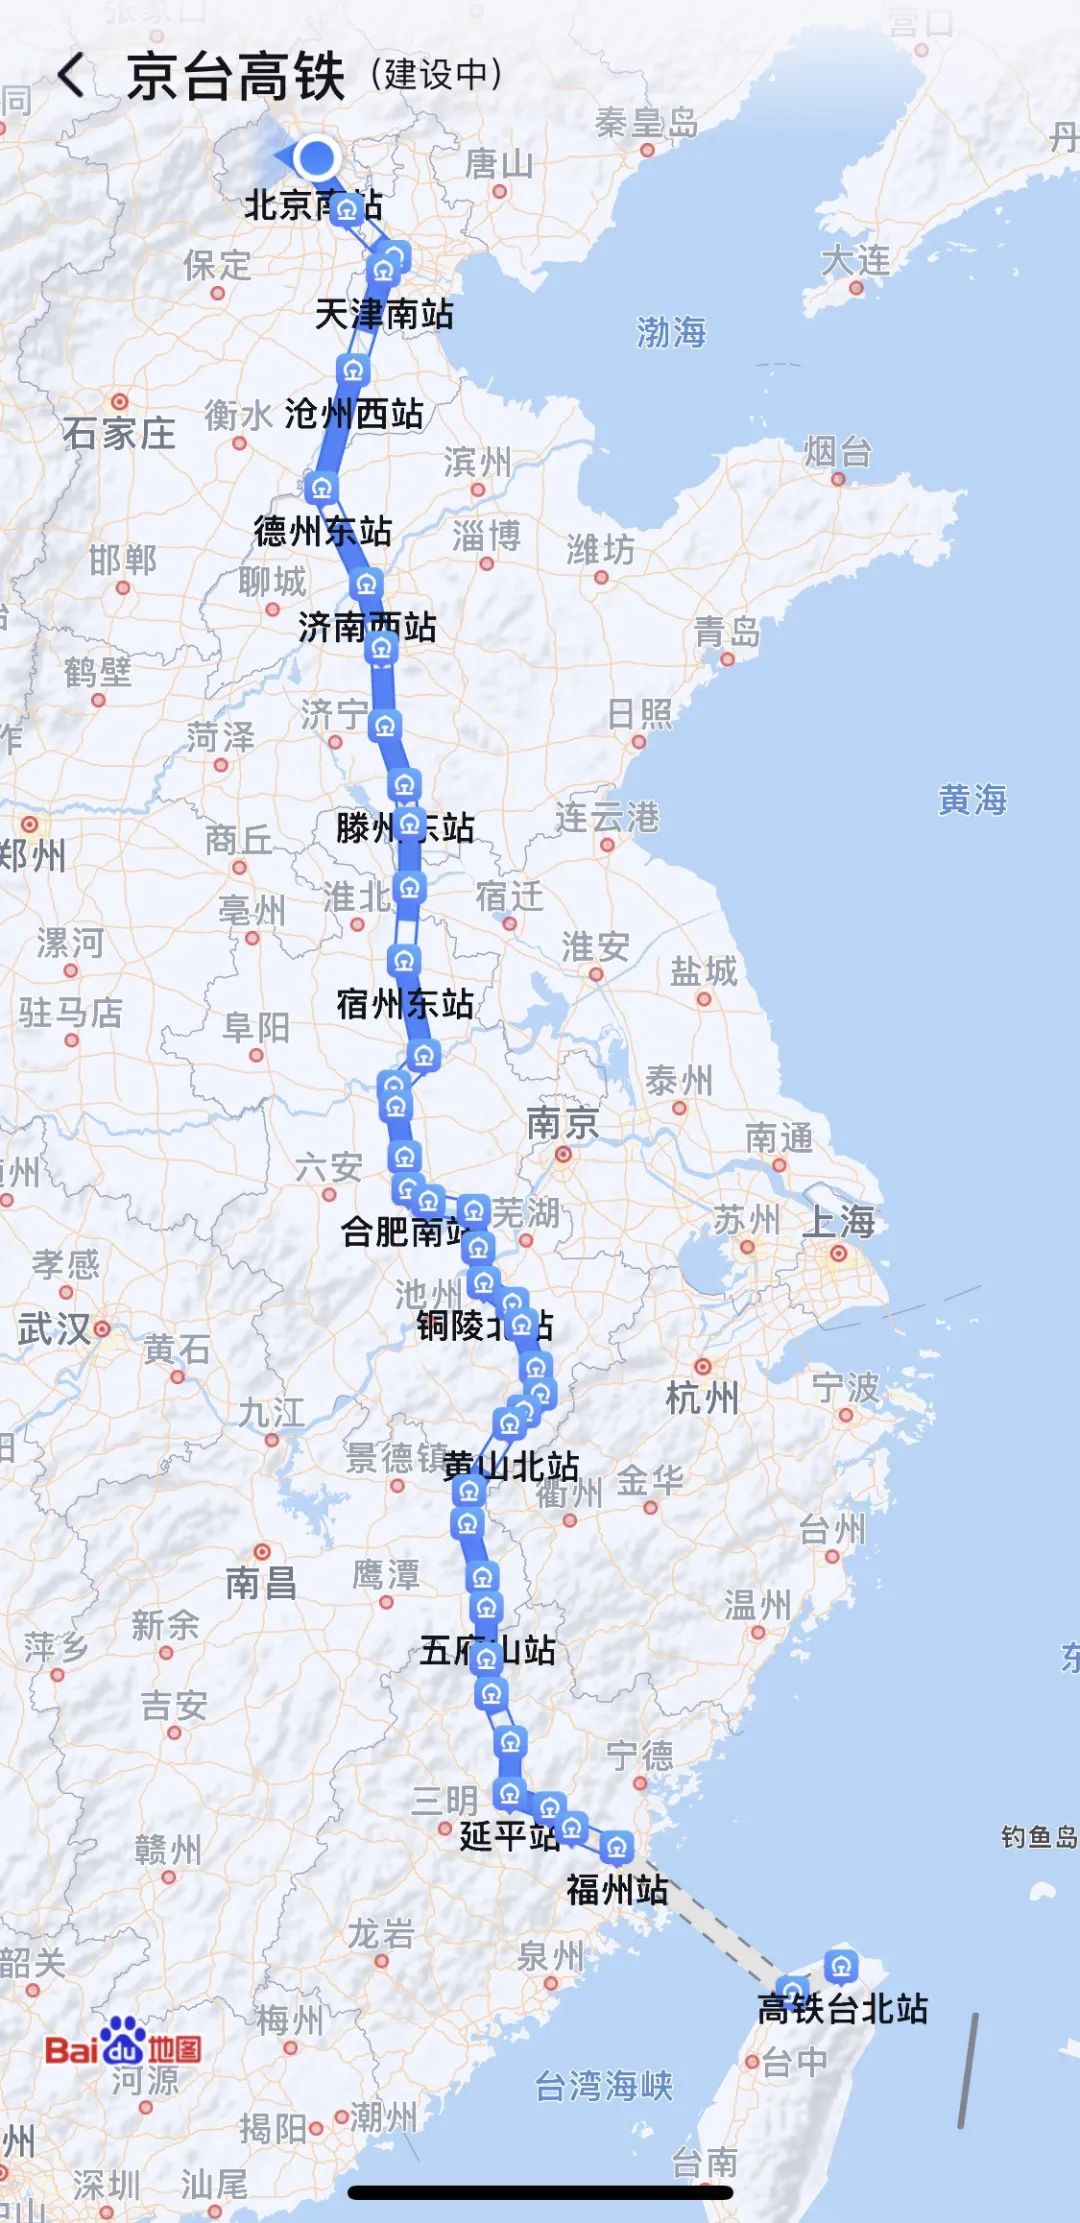 地图已可显示“京台高铁”线路图！终点站台北！途经福州！